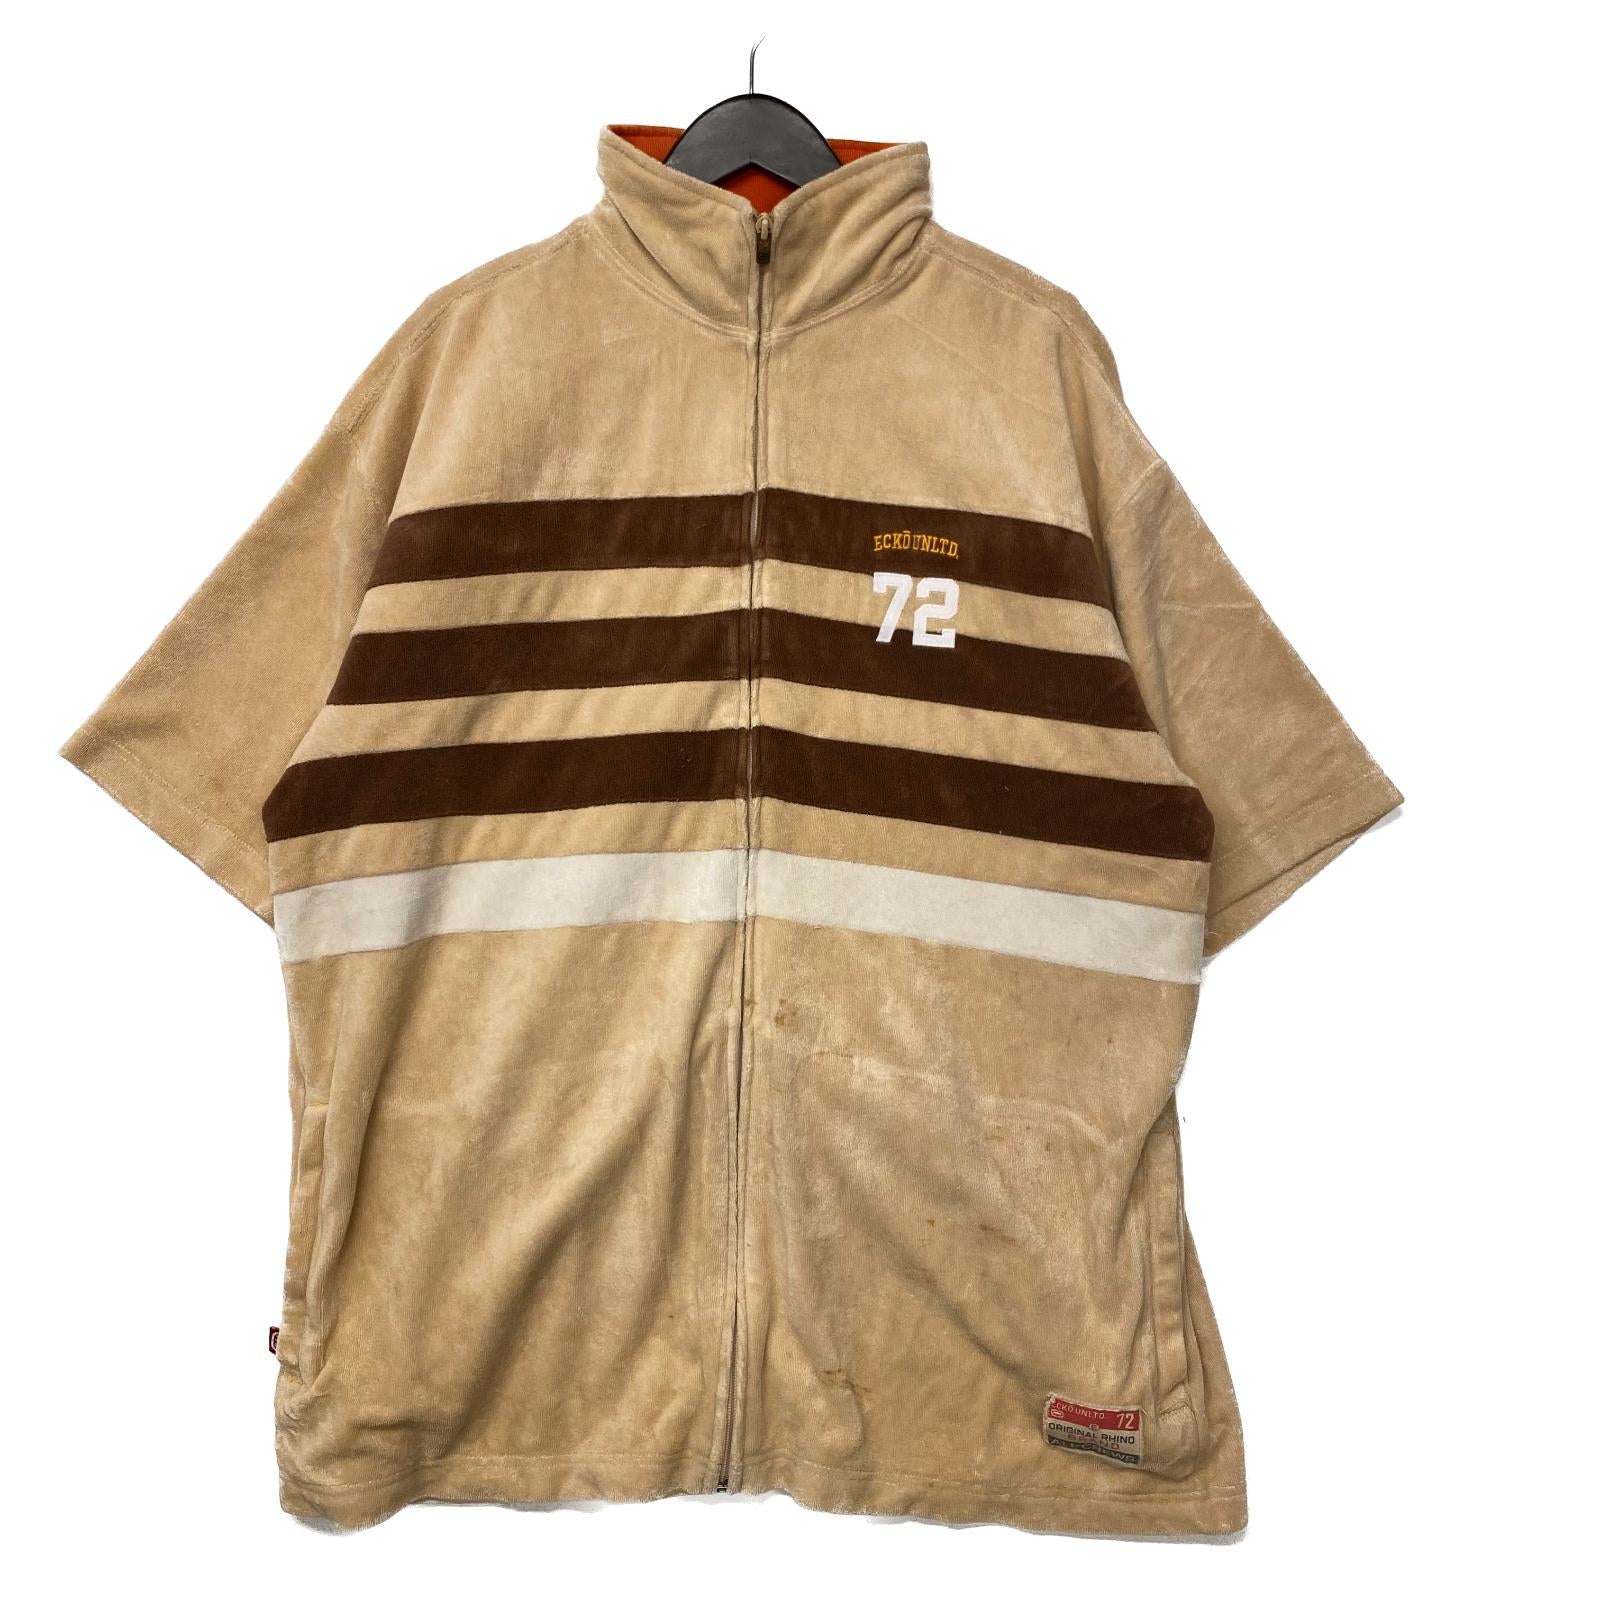 Vintage Ecko Uniltd Beige Fleece Zip-Up Short Sleeve Sweatshirt Size L 90s 00s